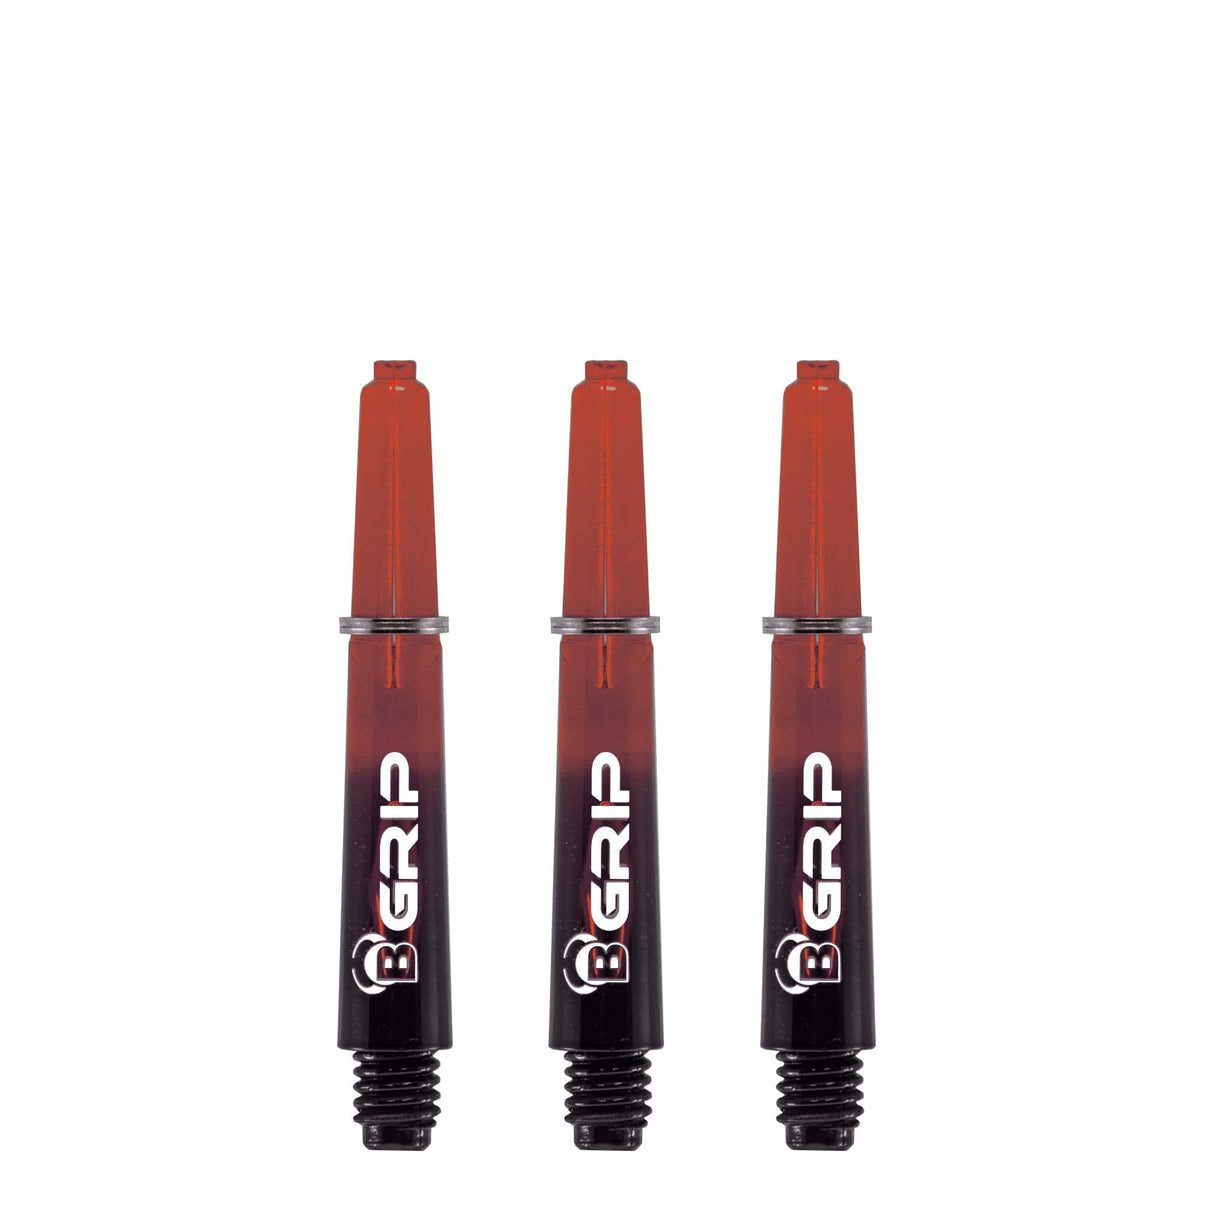 BULL'S B-Grip TT Shaft - Polycarbonate - Black & Red Short